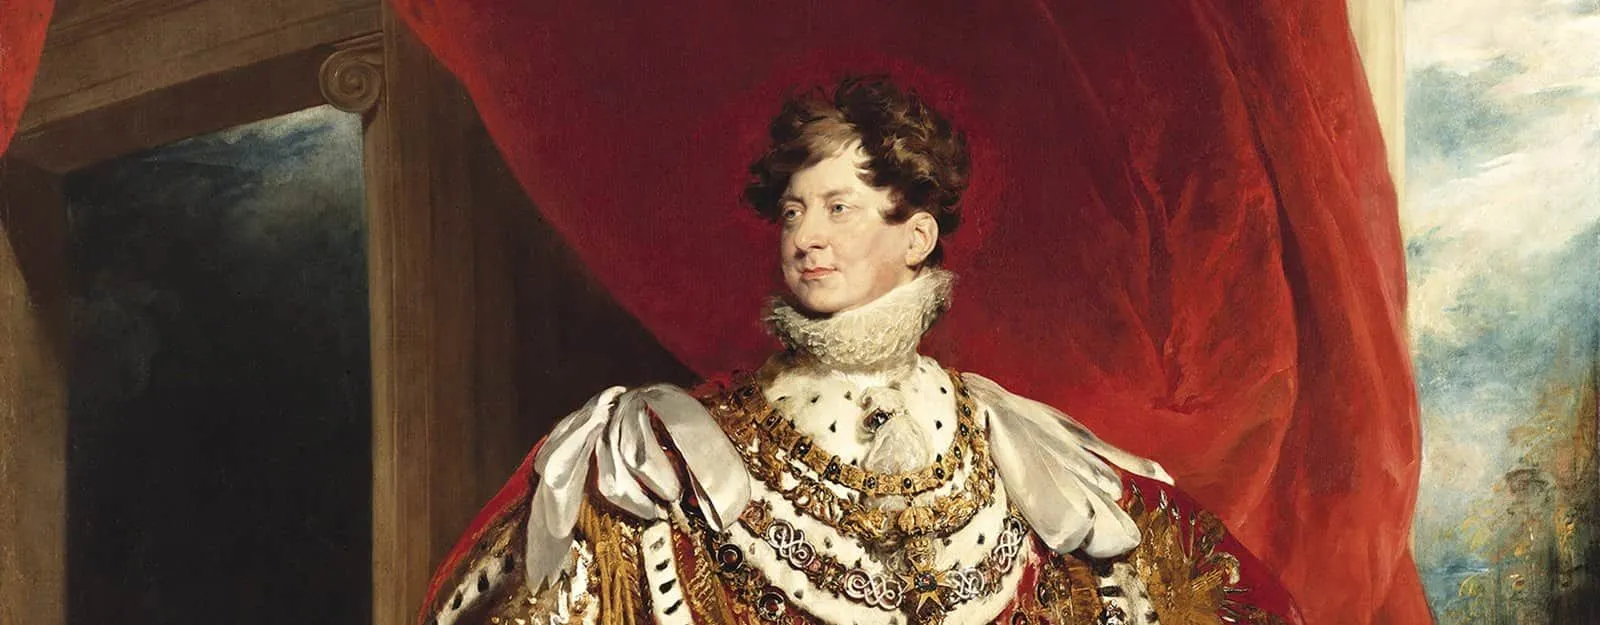 Pintura do rei George IV em sua exposição.